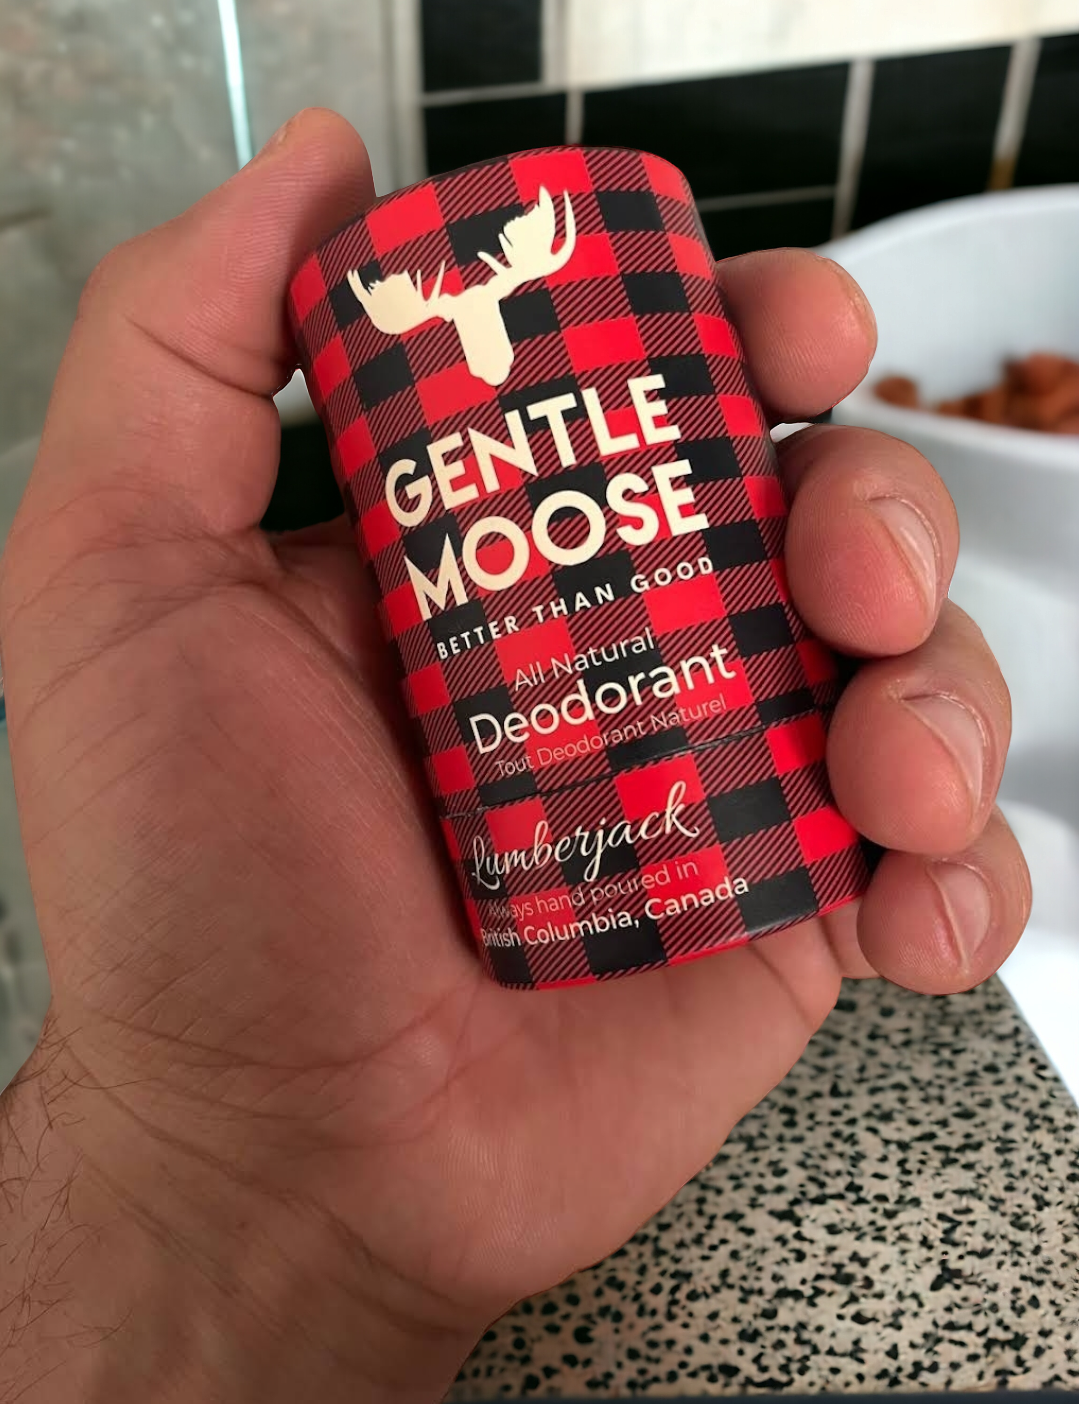 Gentle Moose Skincare Natural Deodorant Aluminum and Baking Soda Free Lumberjack made in Canada